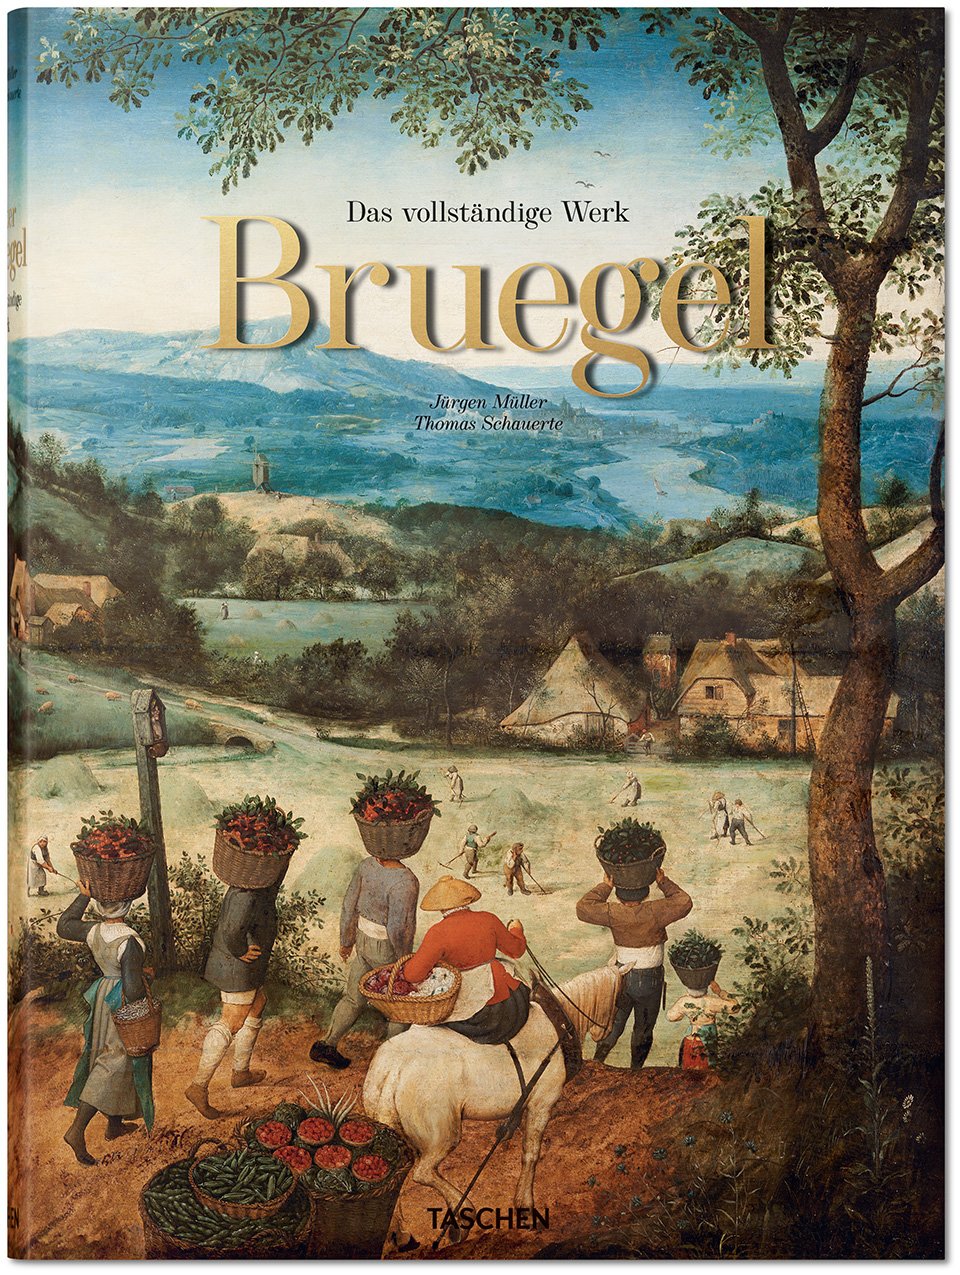 Pieter Bruegel. Das vollständige Werk | Jürgen Müller, Thomas Schauerte